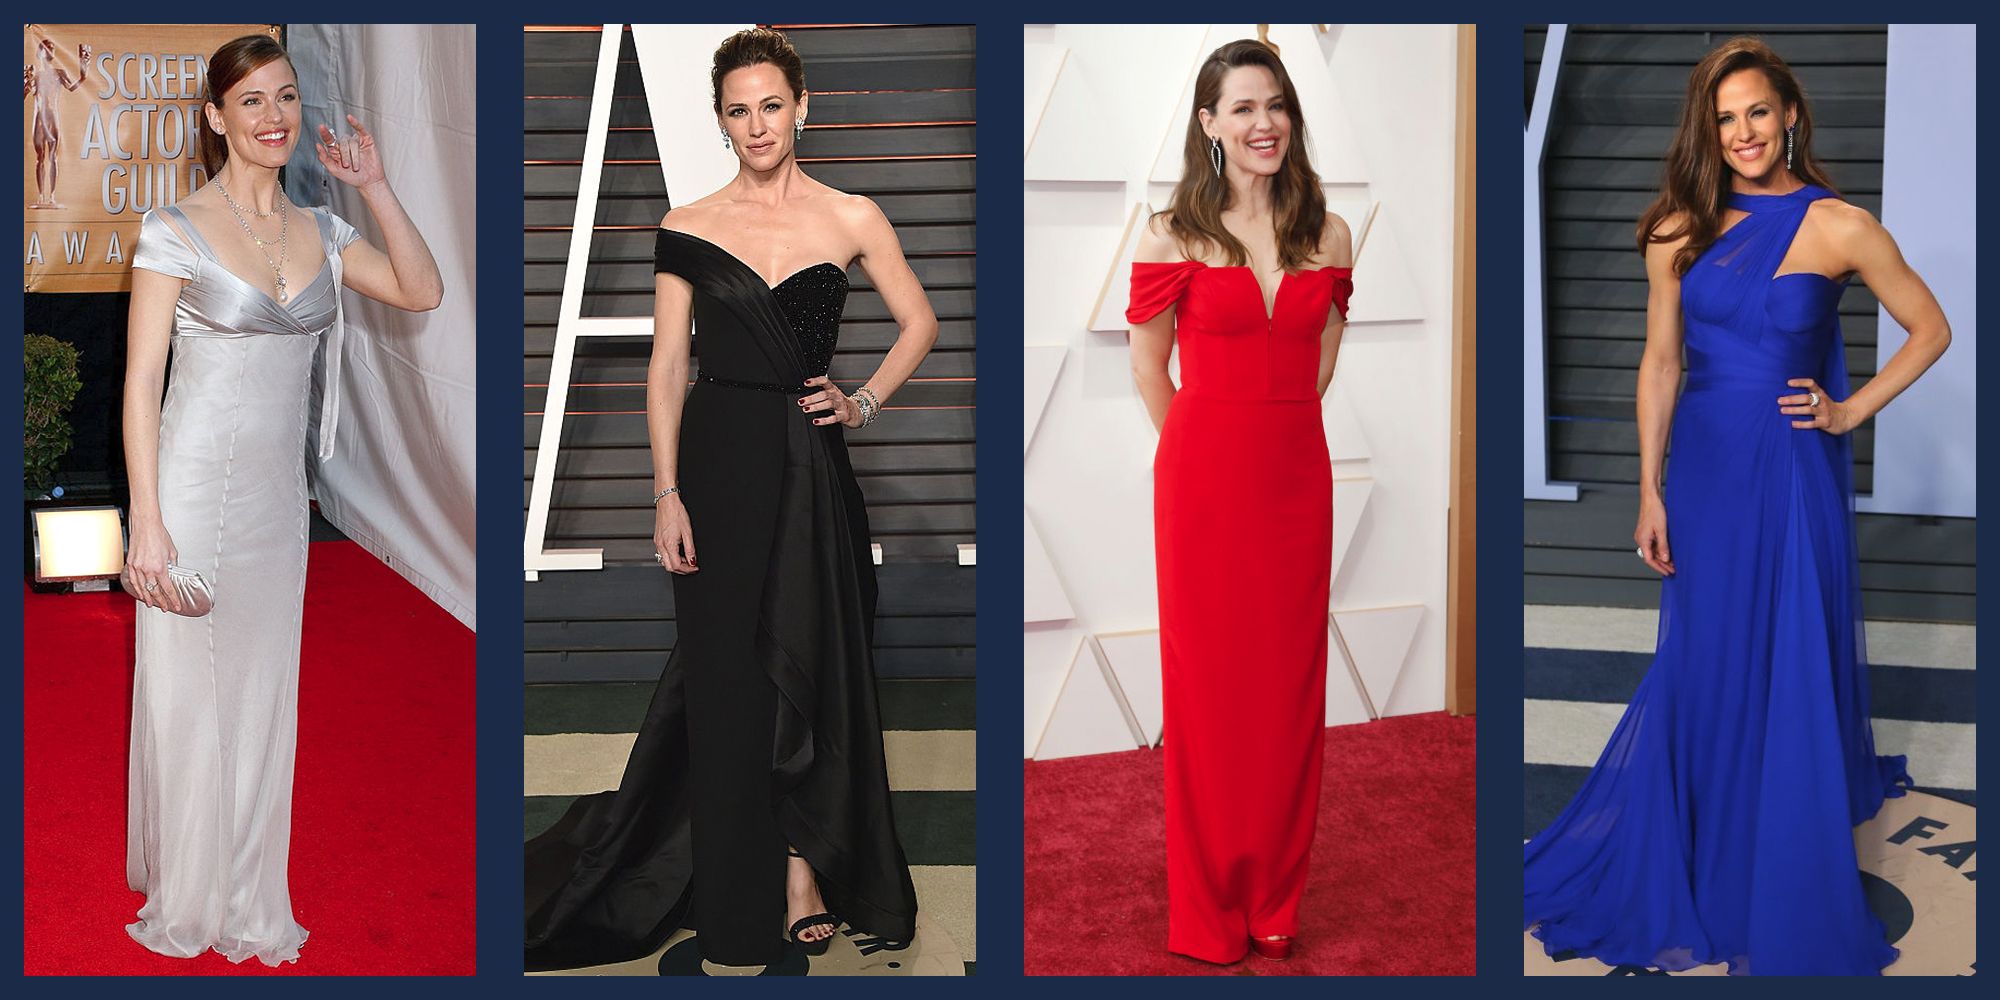 Jennifer Garner's Best Red Carpet Dresses - Jennifer Garner Red